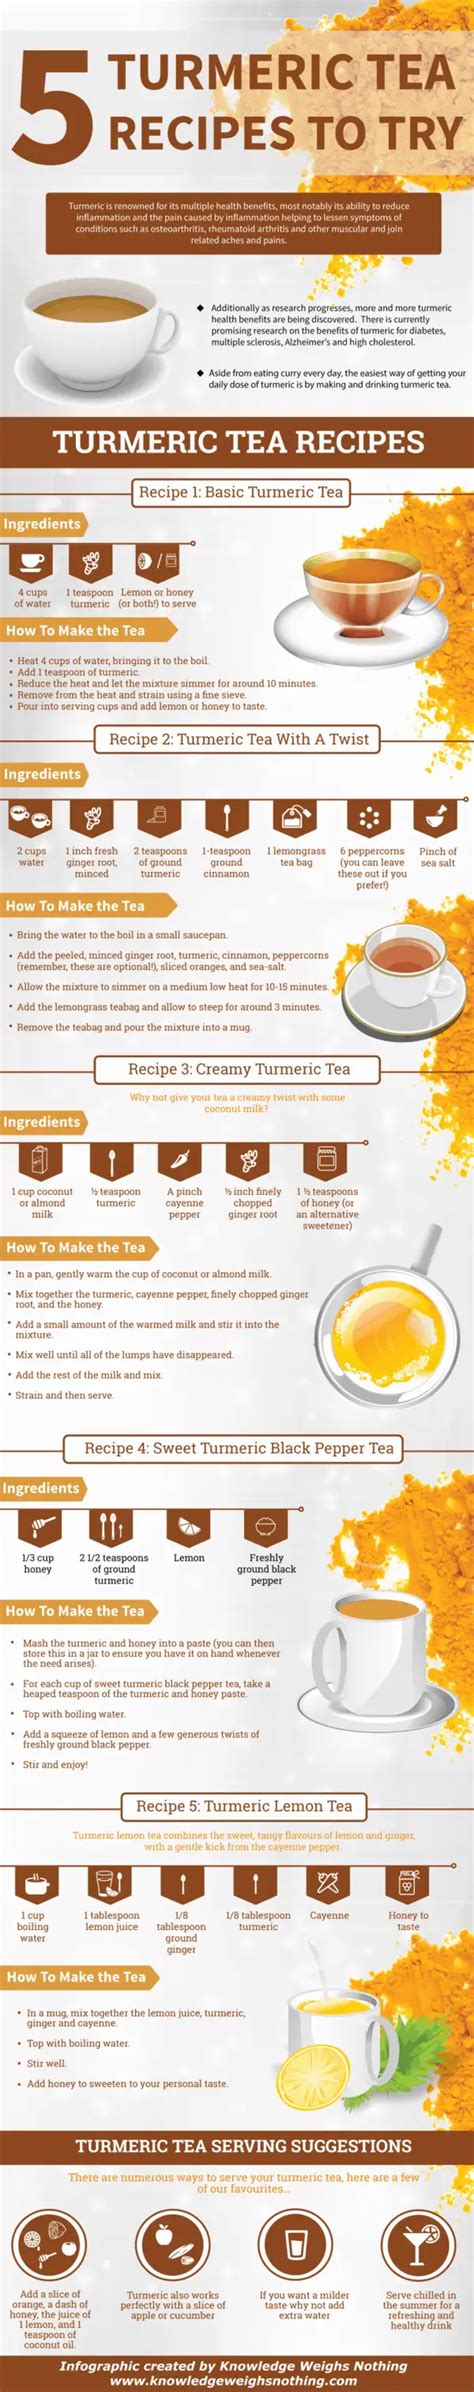 5 Turmeric Tea Recipes Plus The Health Benefits Of Turmeric